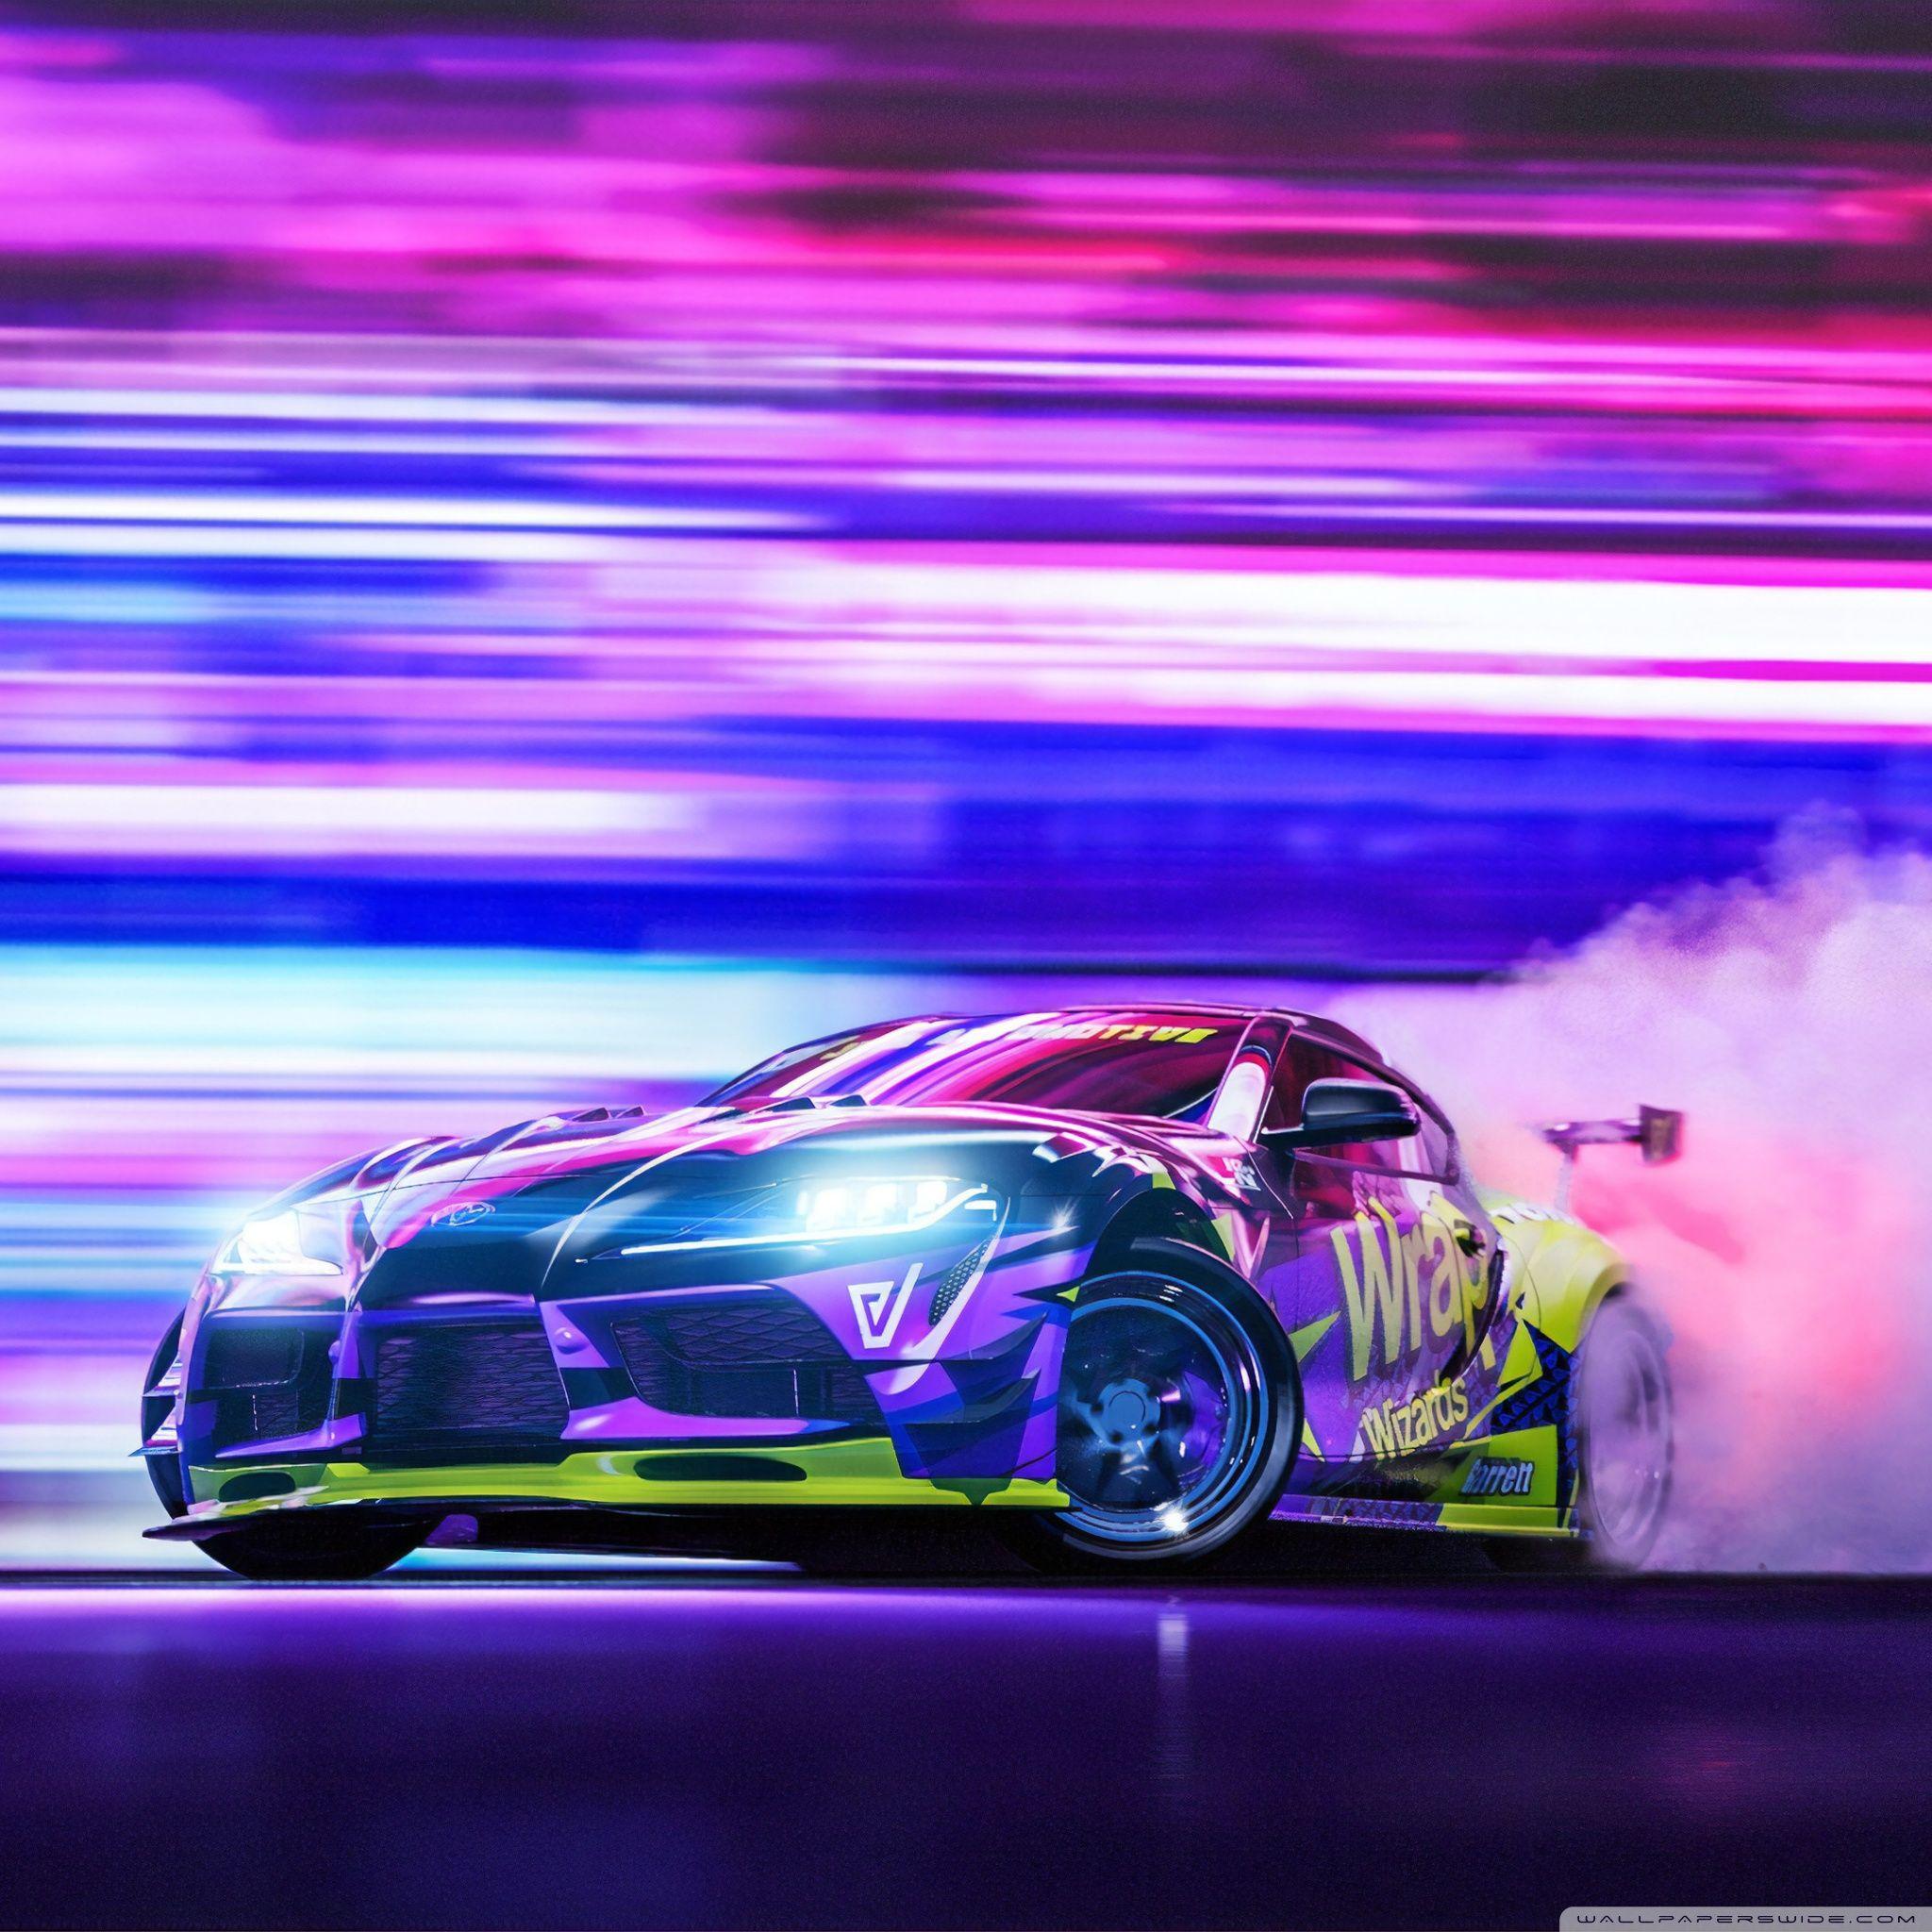 4K Drift Car Wallpapers - Top Free 4K Drift Car Backgrounds